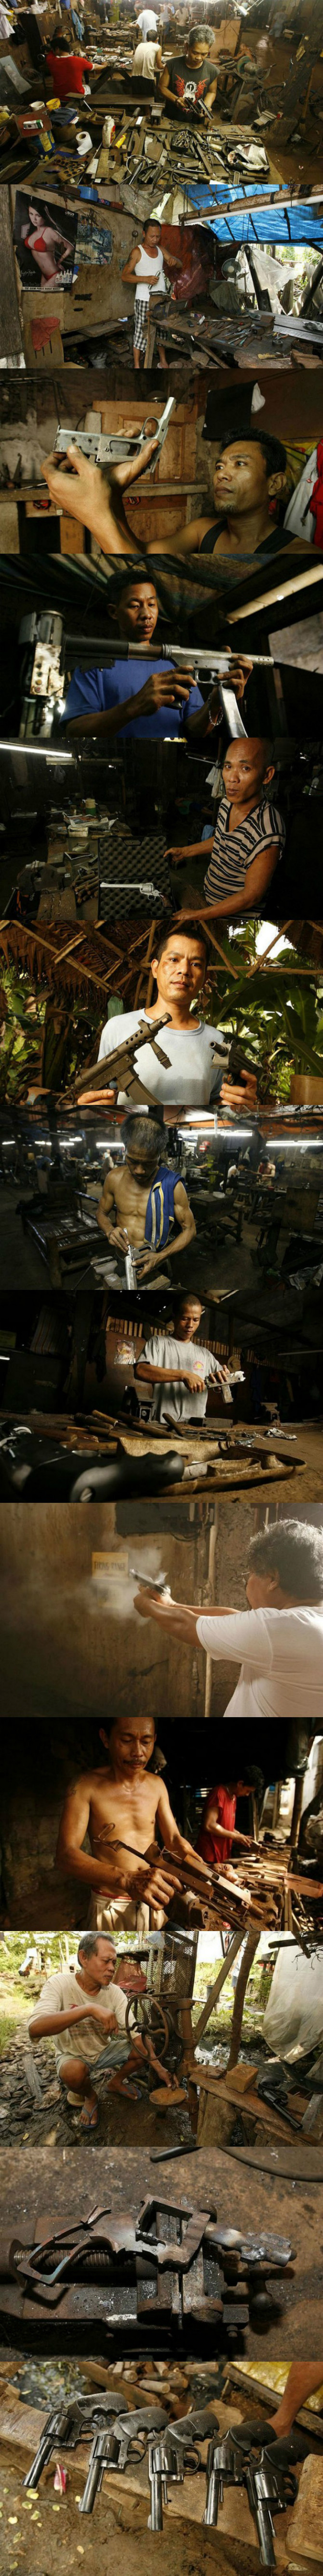 필리핀의 사제 총기 공장